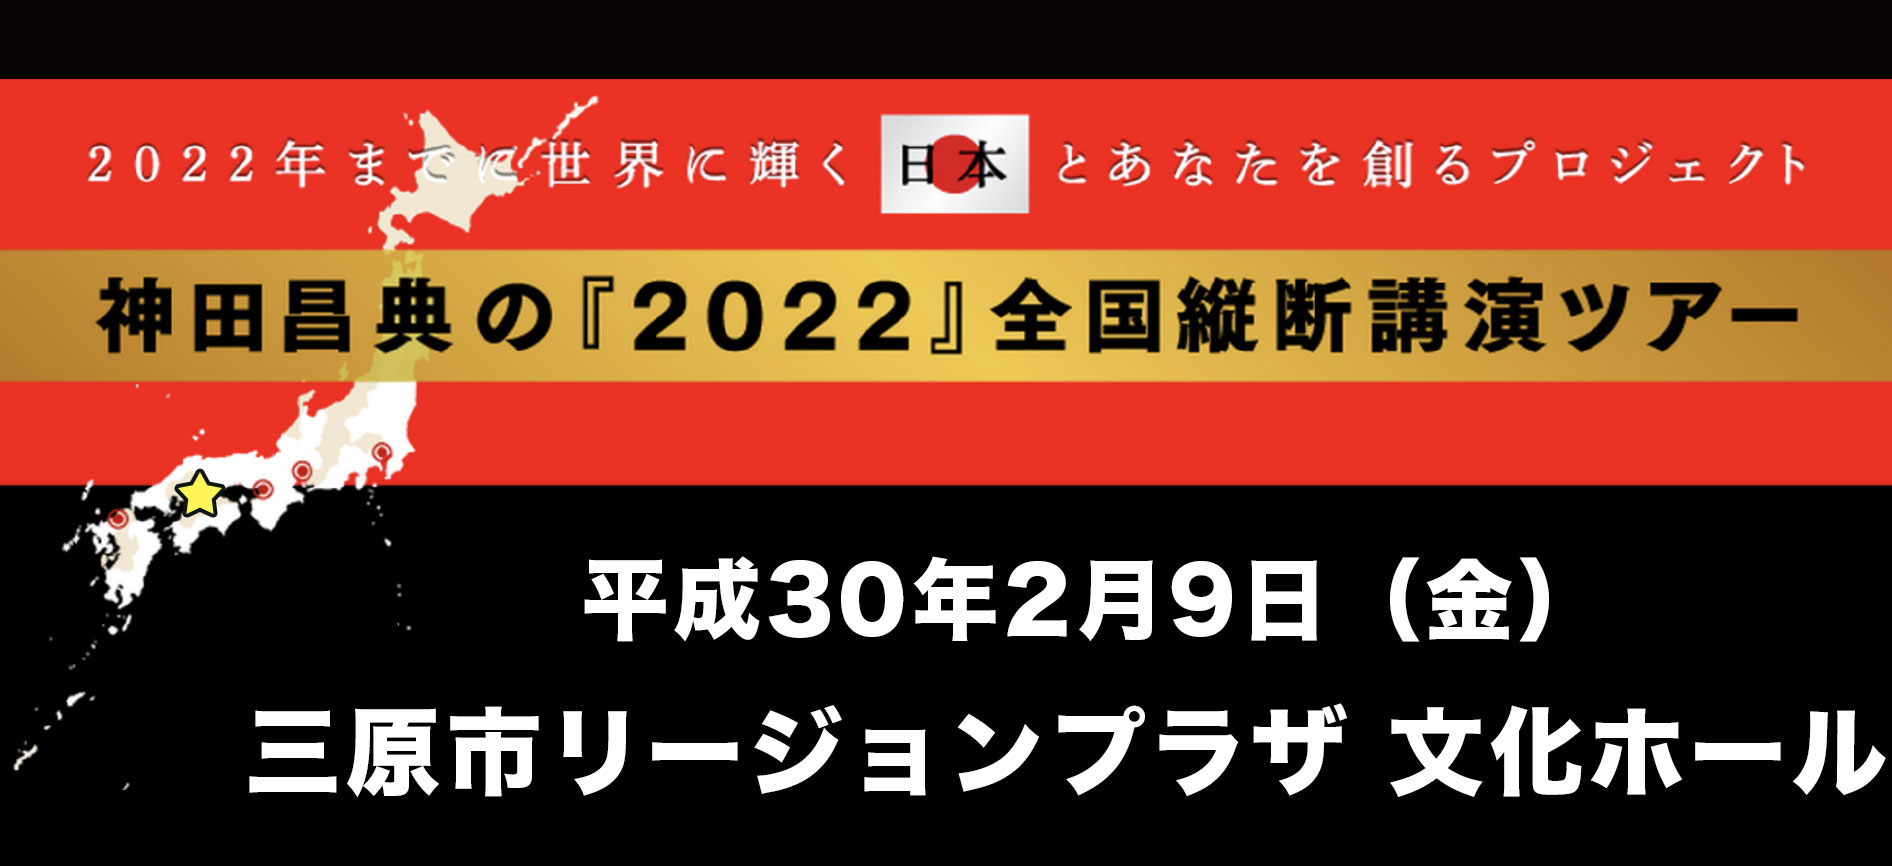 神田昌典2022-1